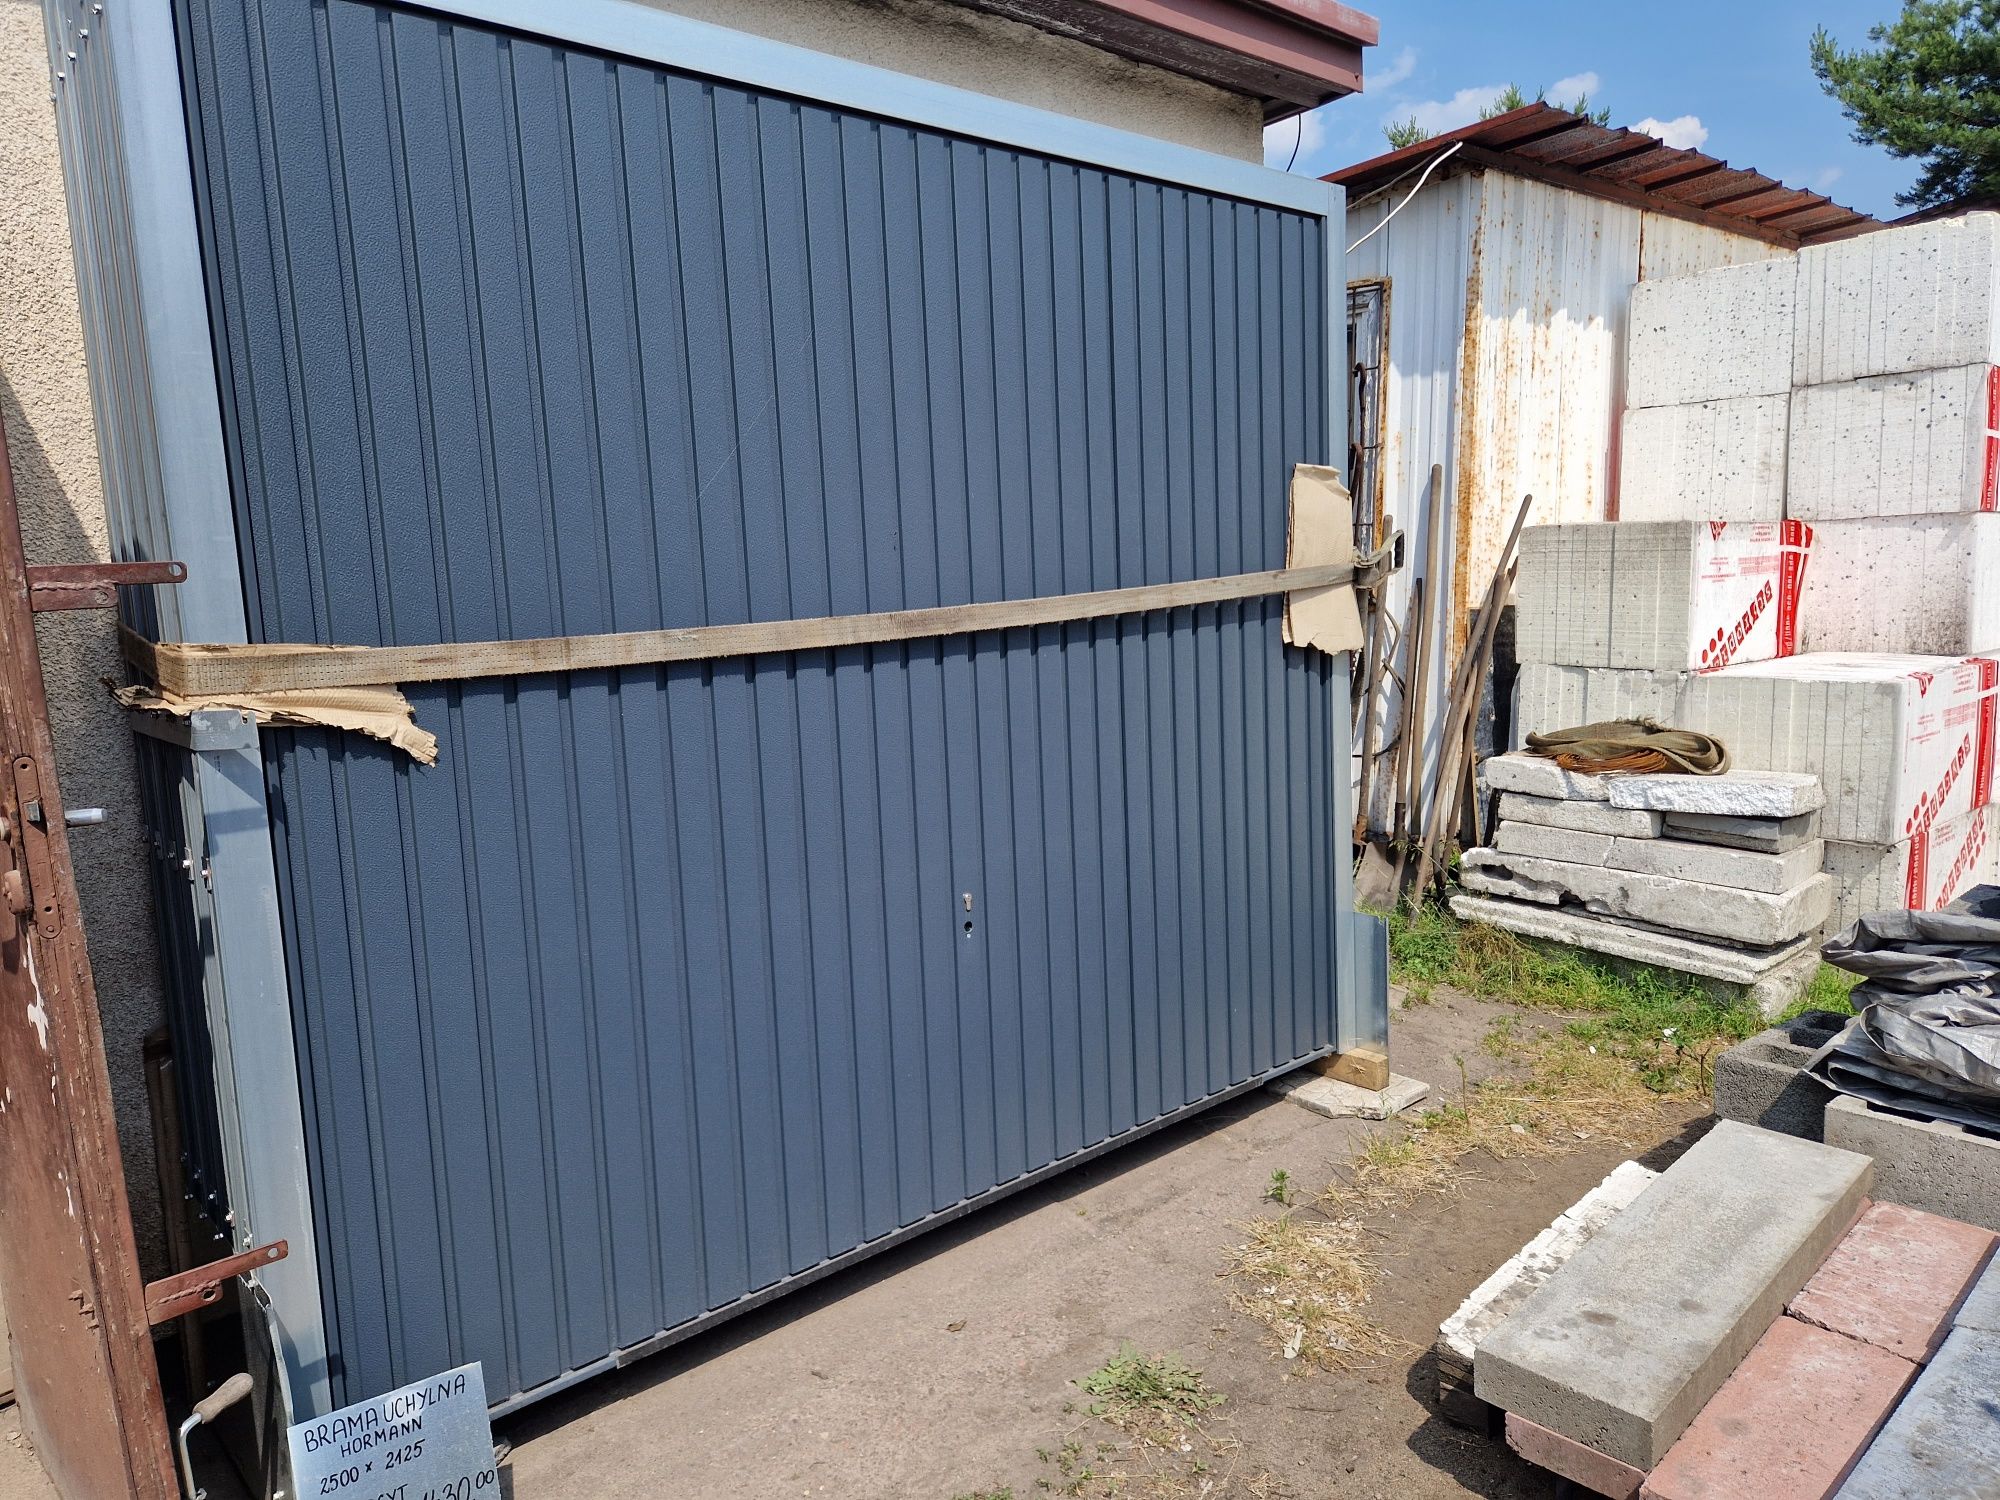 Brama garażowa/uchylna - 250x212,5cm - Hoermann - brązowa